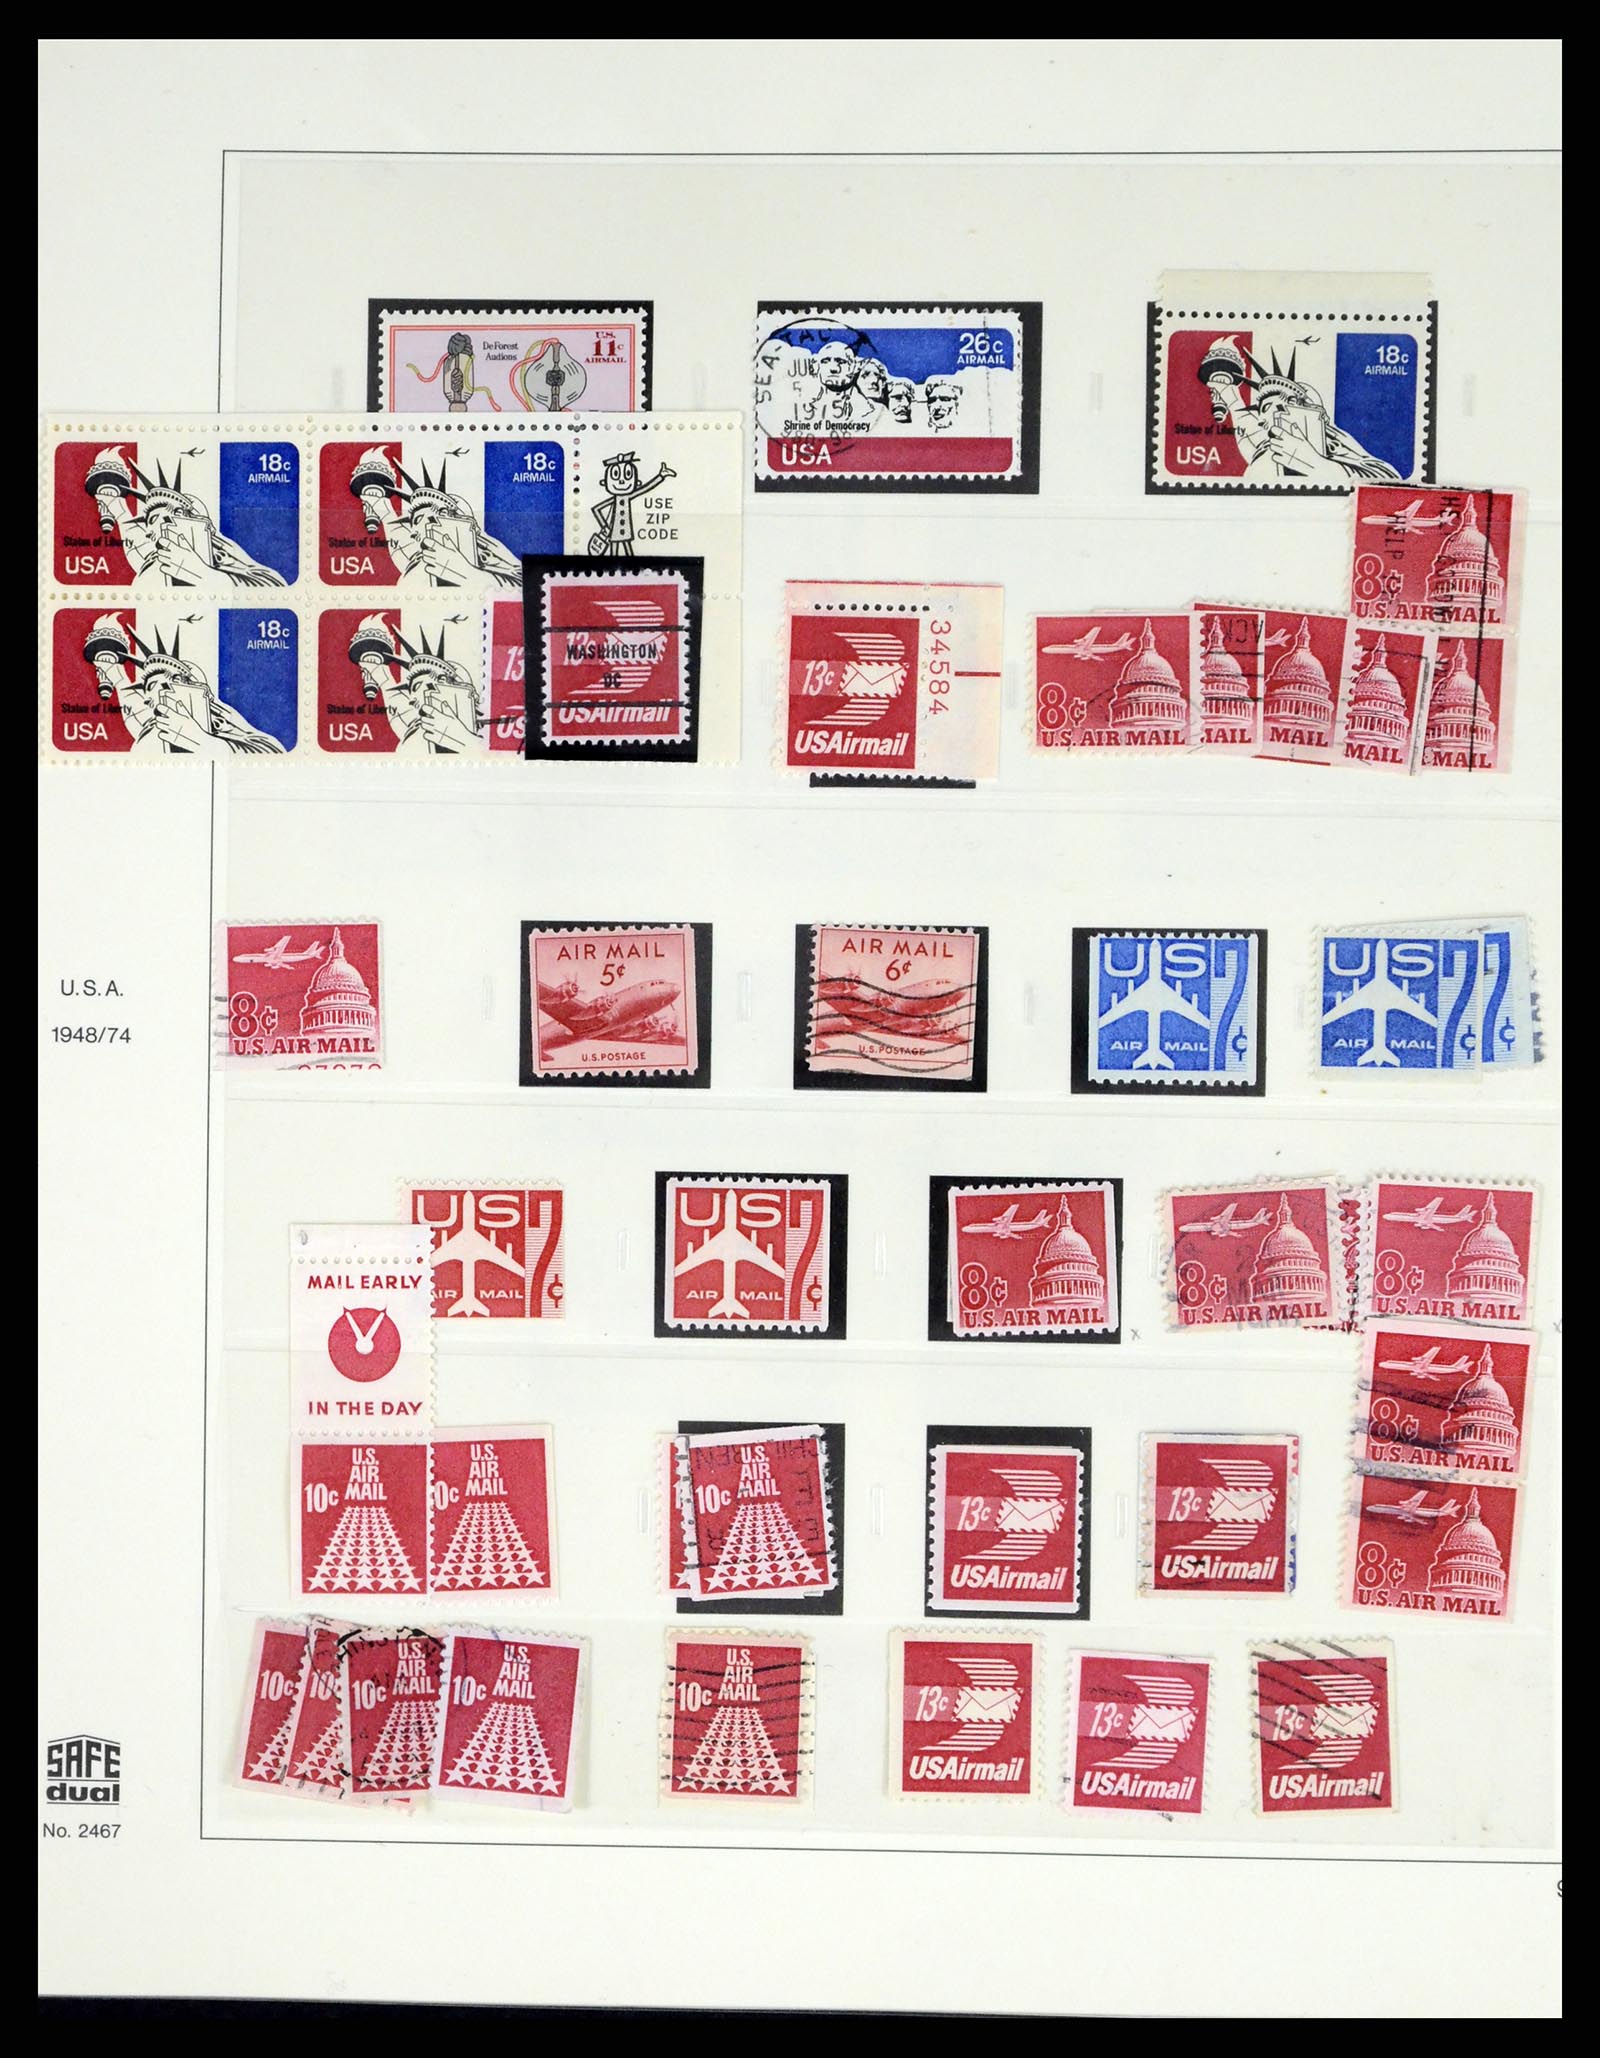 37551 219 - Stamp collection 37551 USA 1851-2001.